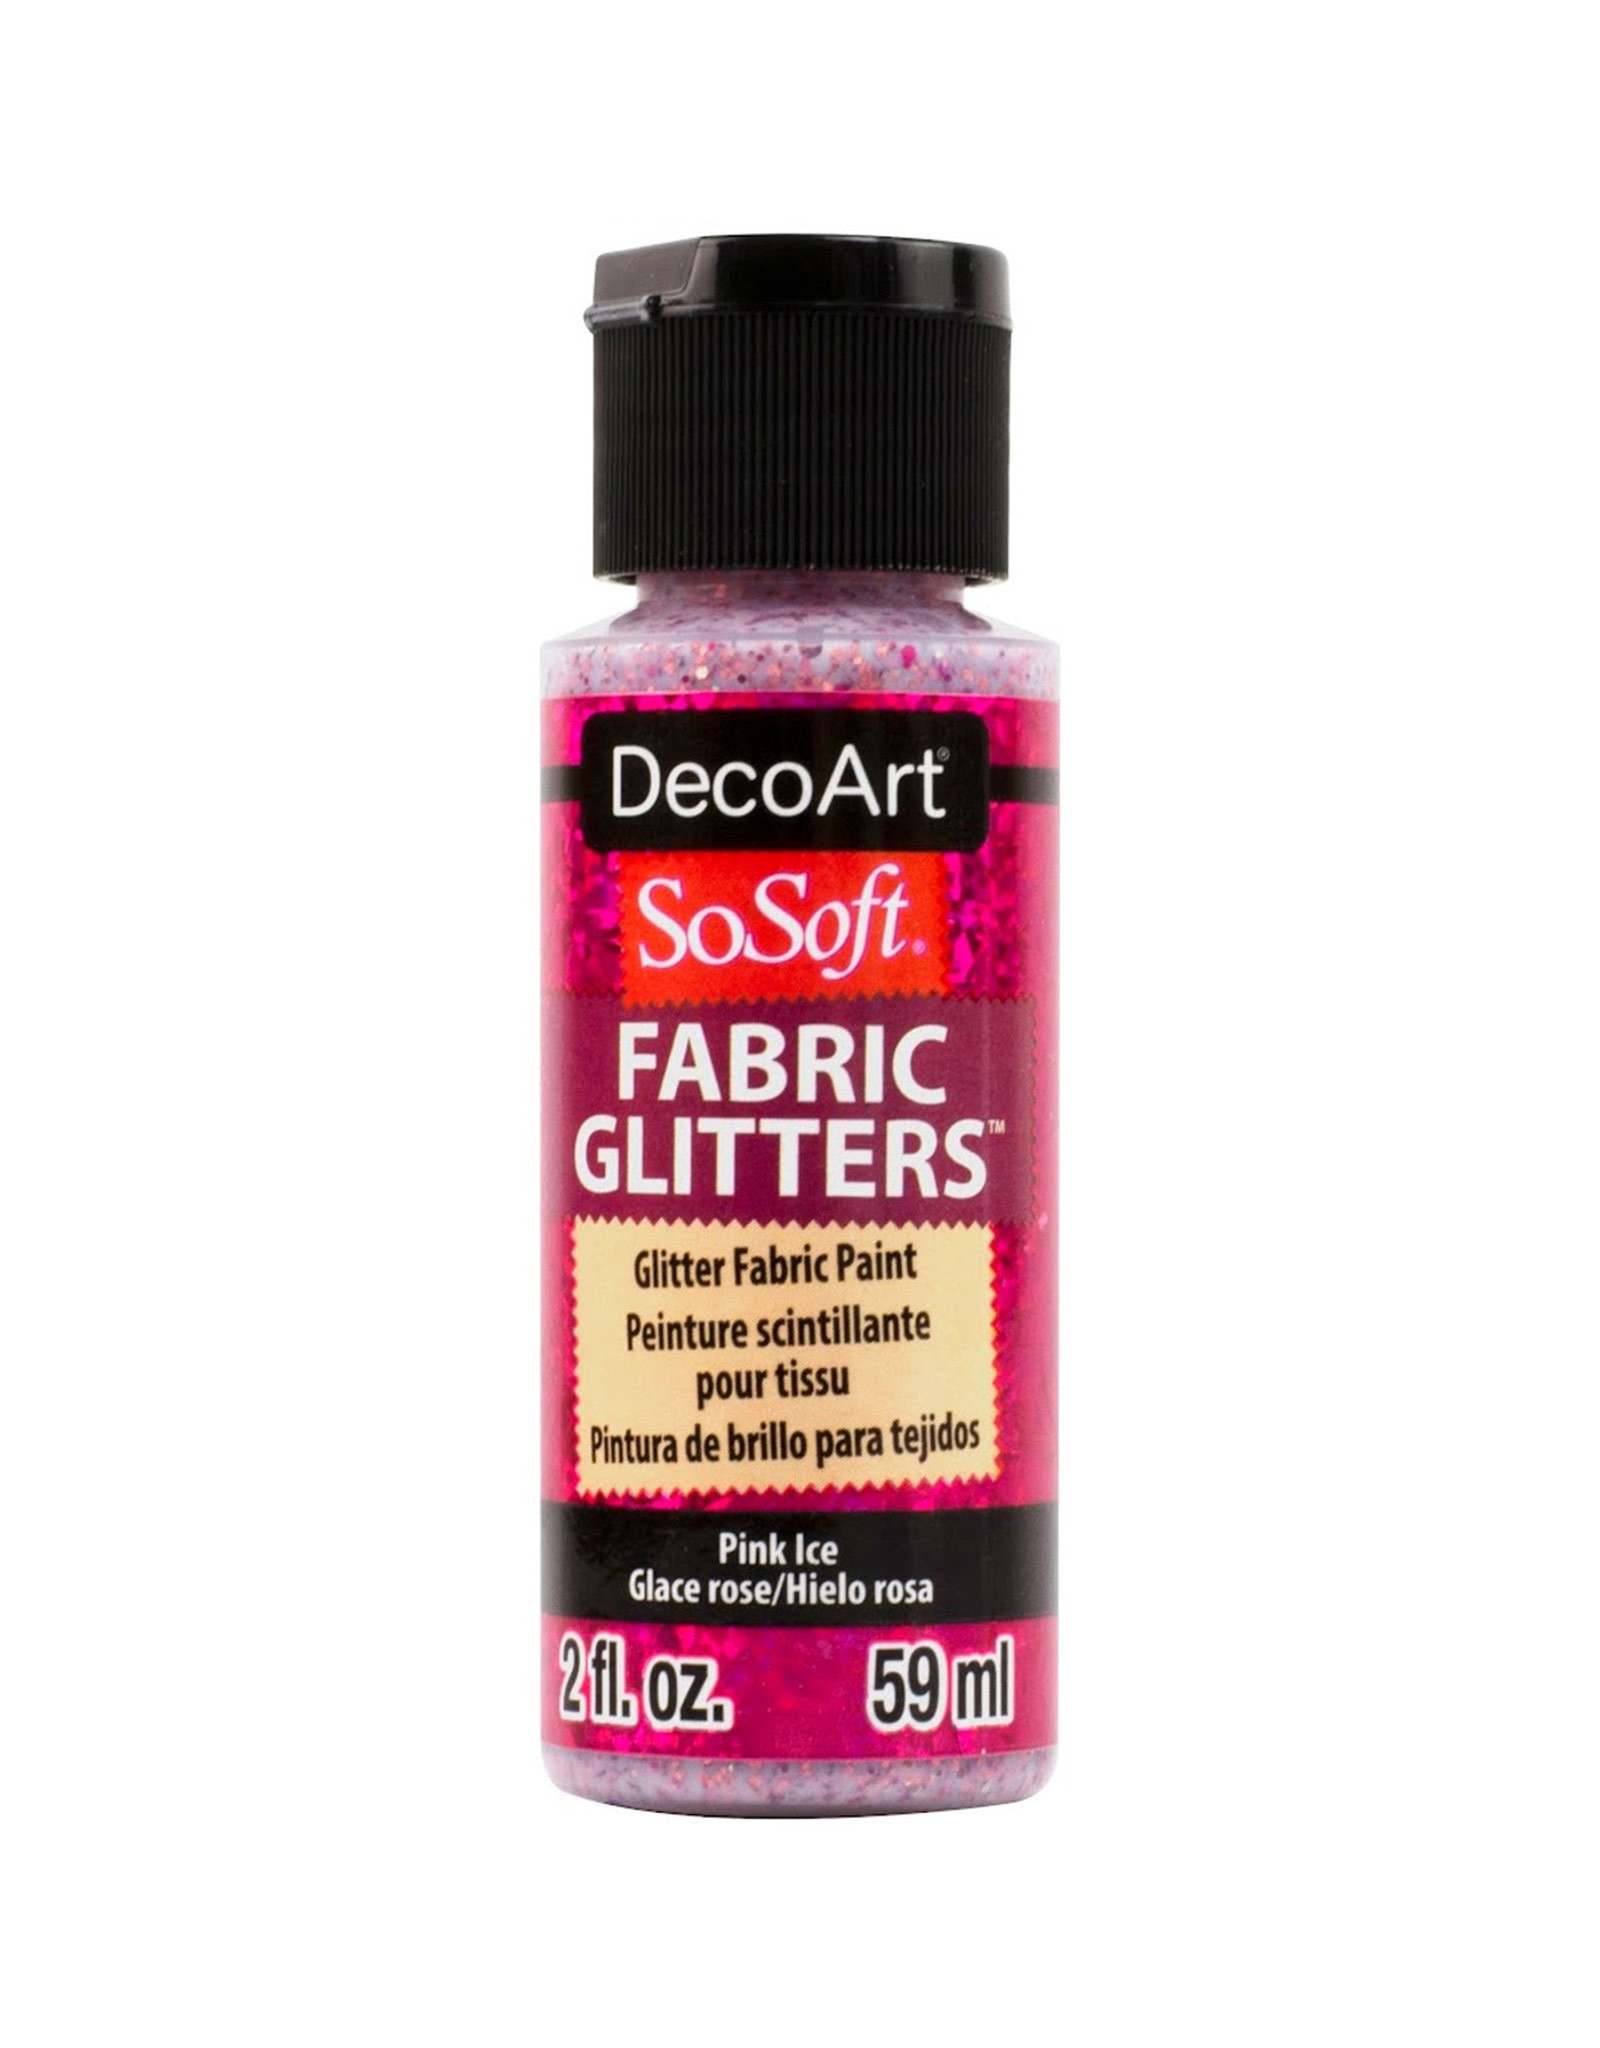 DecoArt DecoArt SoSoft Fabric Glitters, Pink Ice 2oz